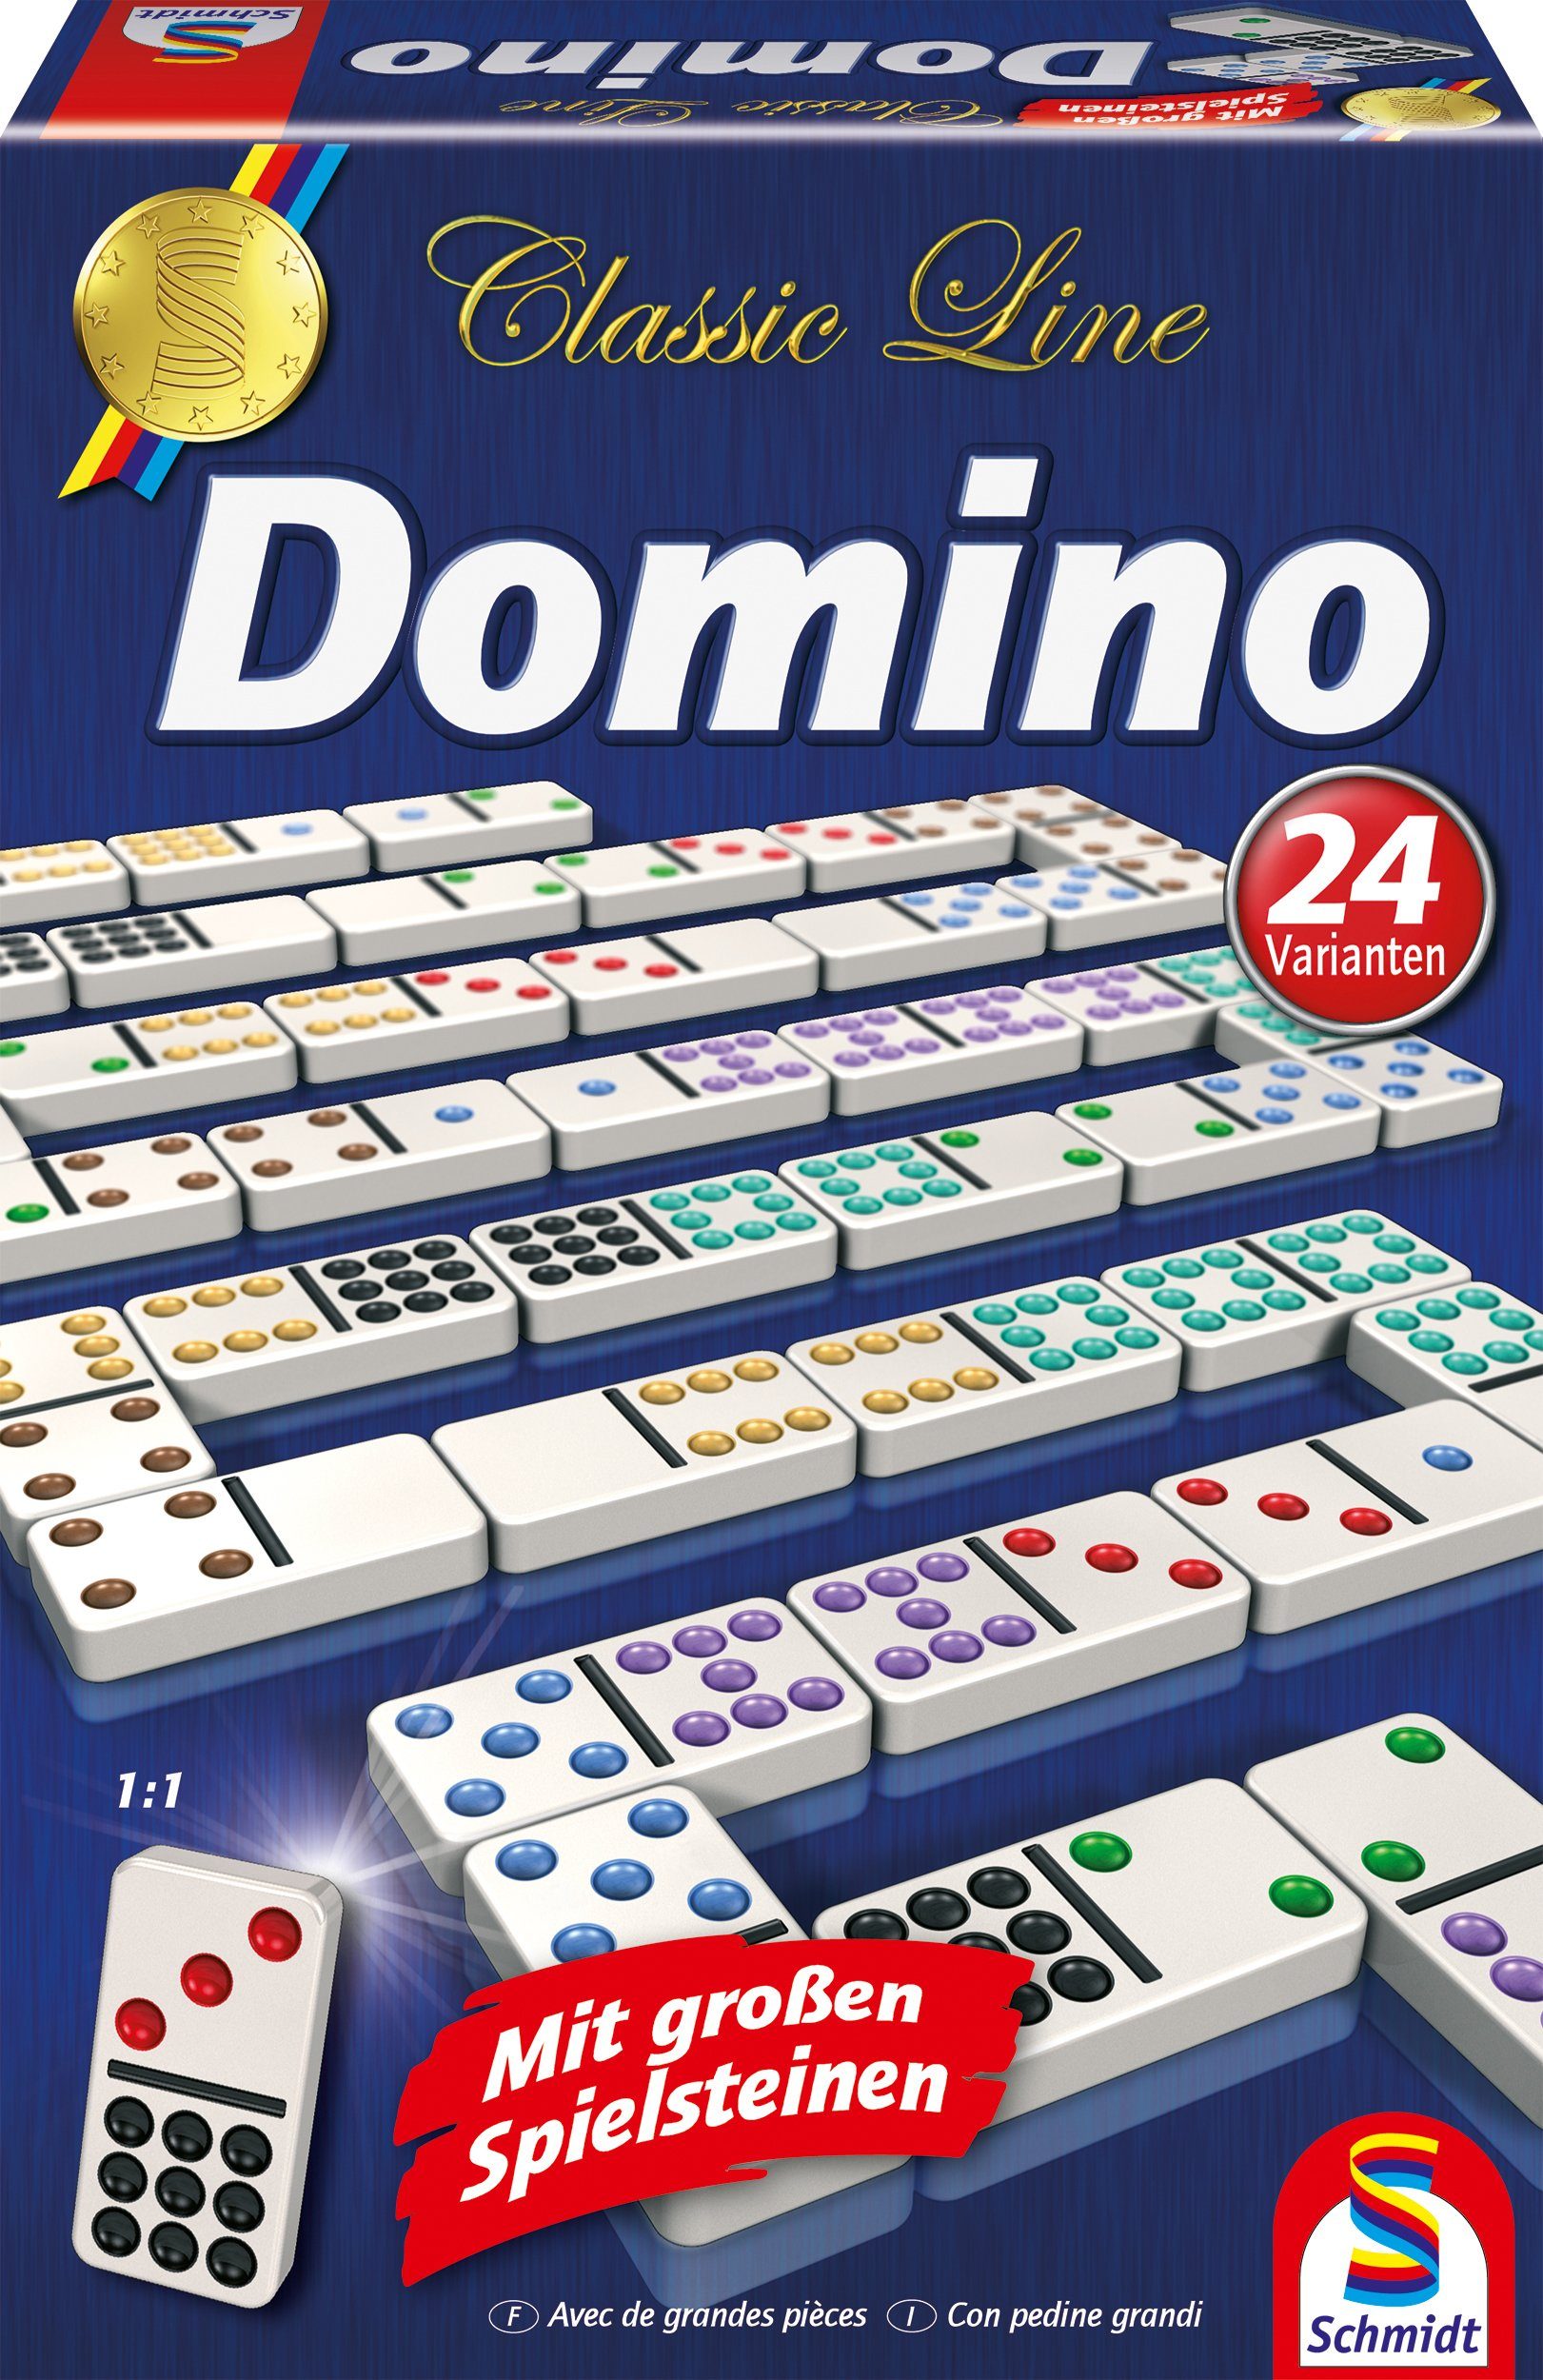 großen Line, Classic Domino, Spiele Spielsteinen Spiel, mit extra Schmidt